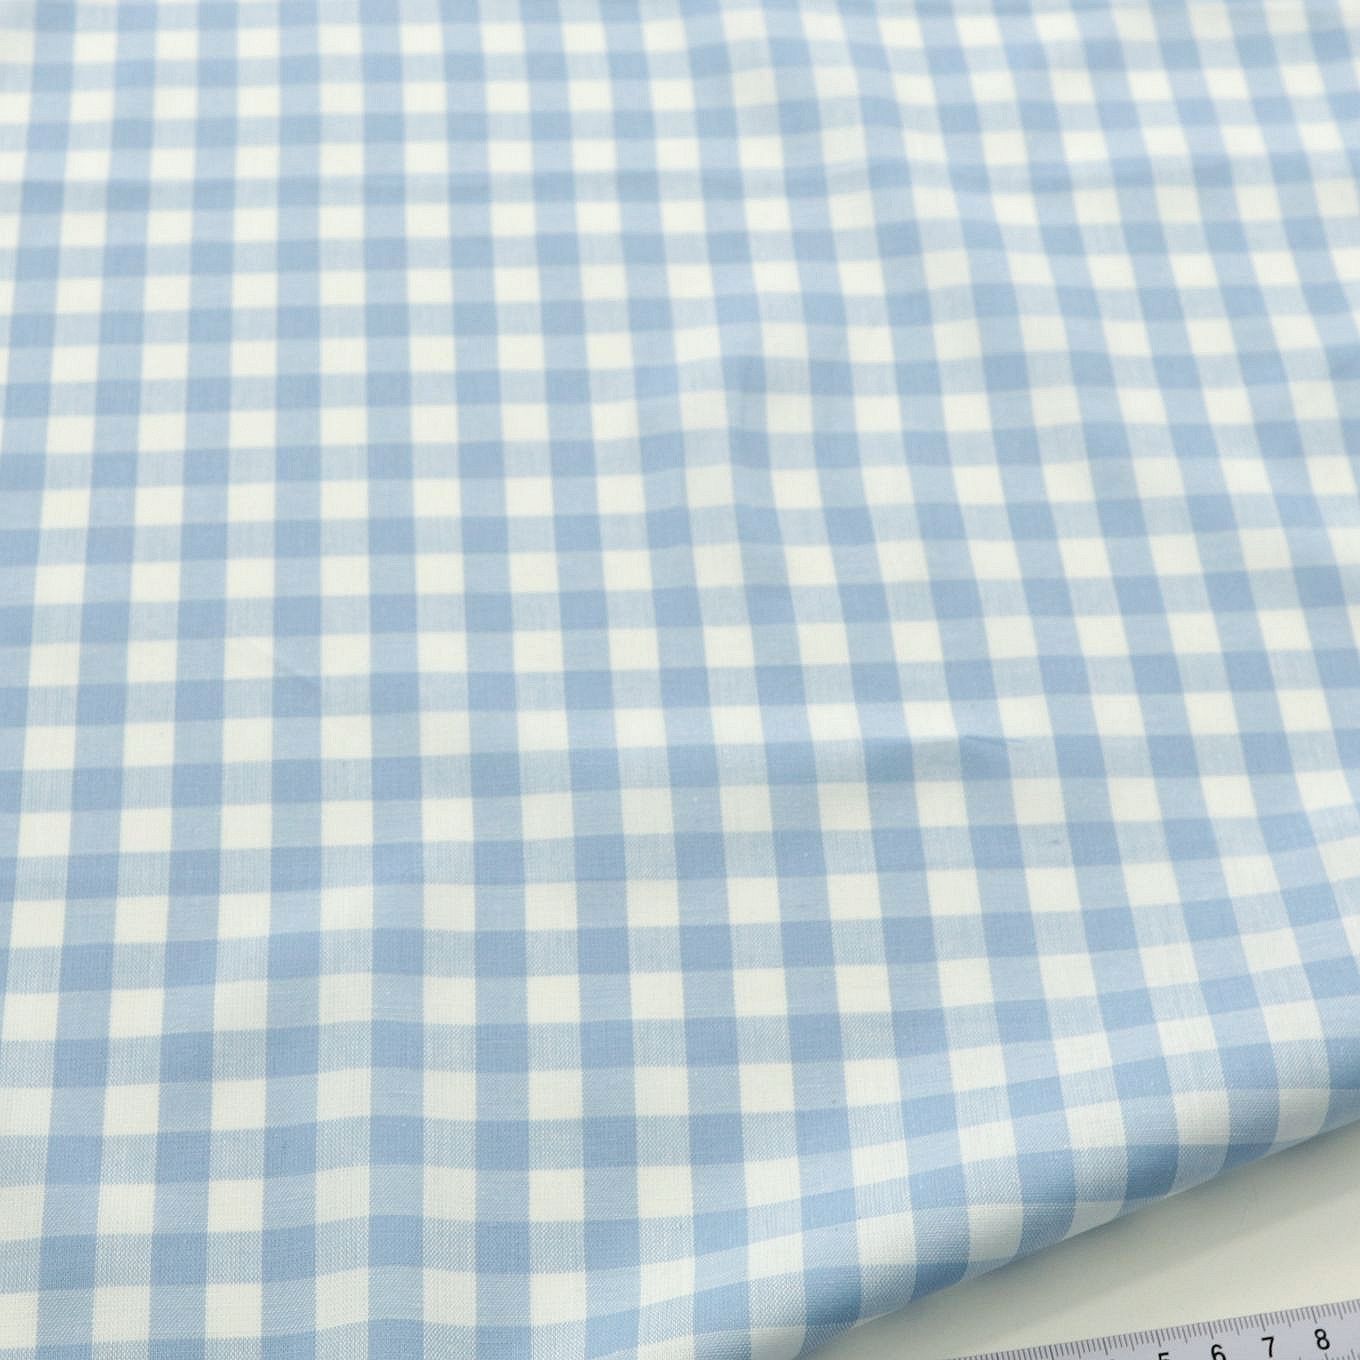 Weiche Karo Baumwollstoff Meterware für Kleid Gardine Vorhang - hellblau weiß